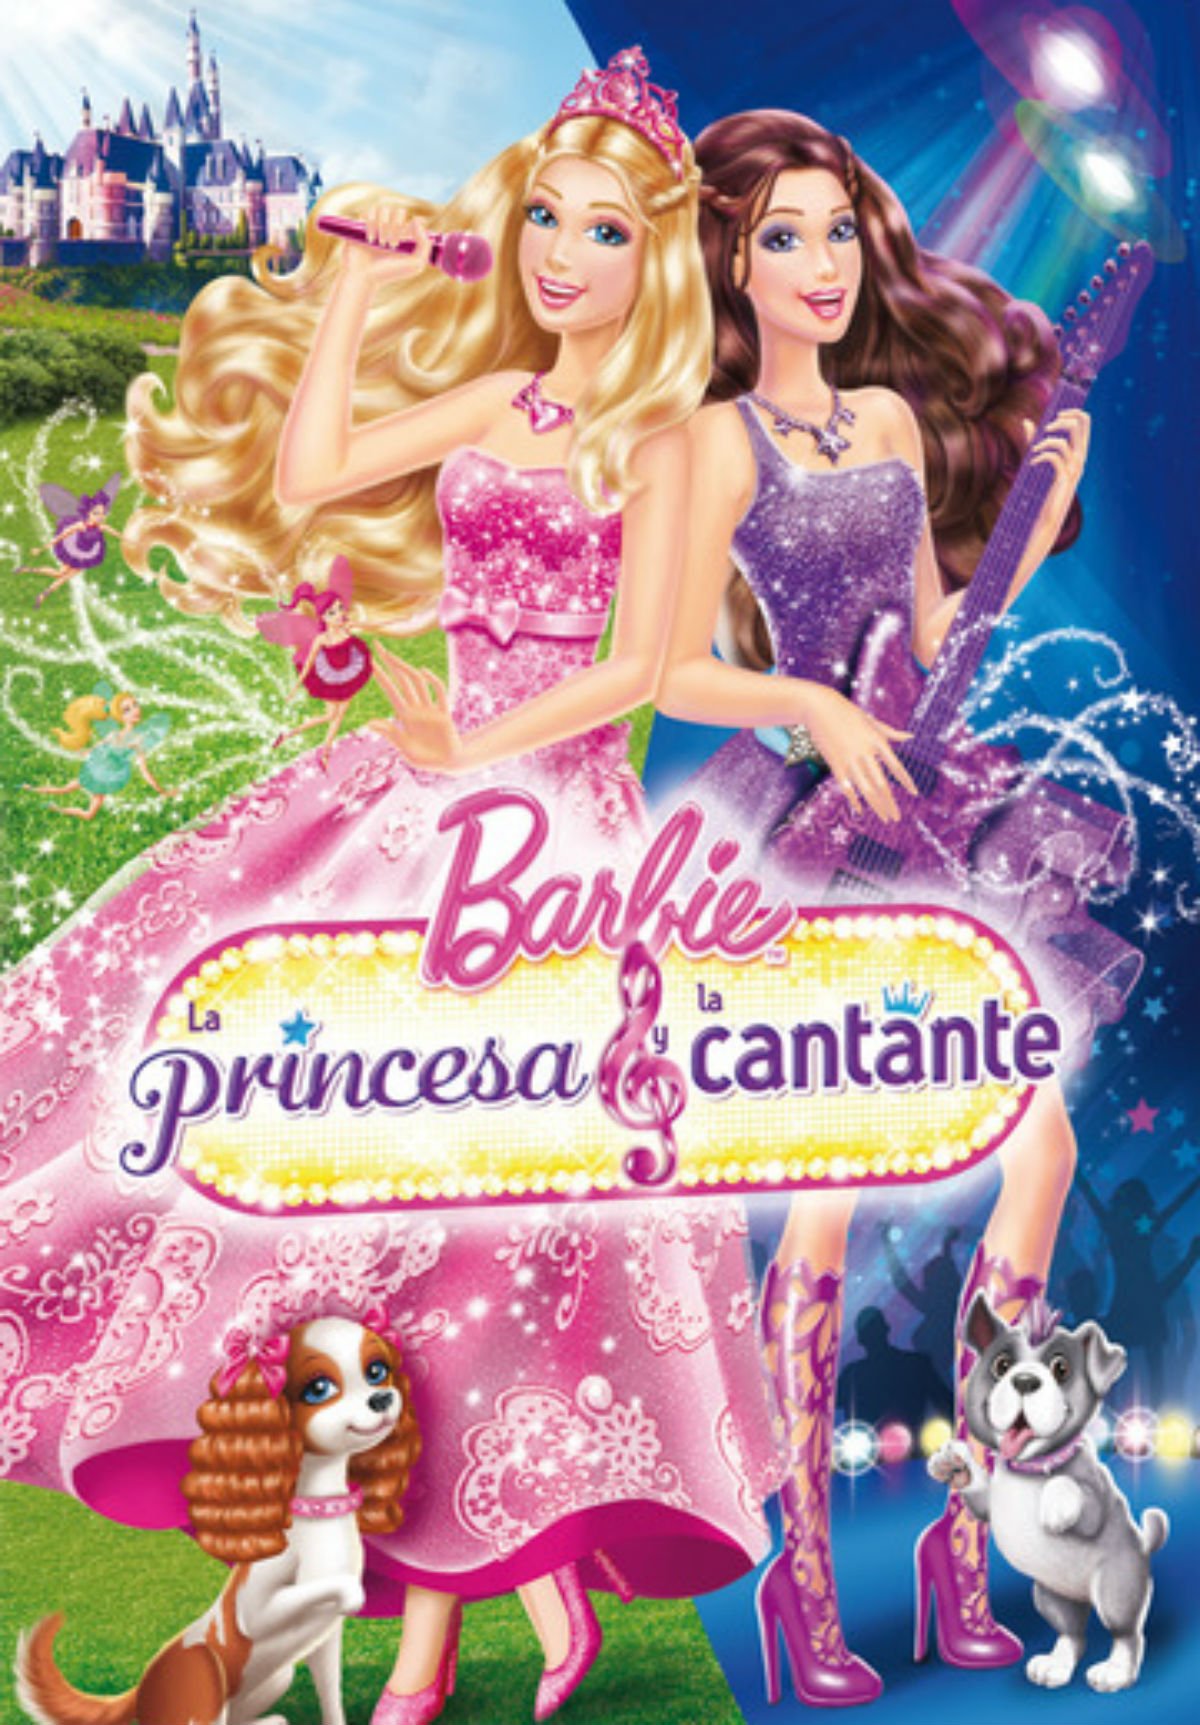 Obediente A rayas mercenario Barbie: la princesa y la cantante - Película 2012 - SensaCine.com